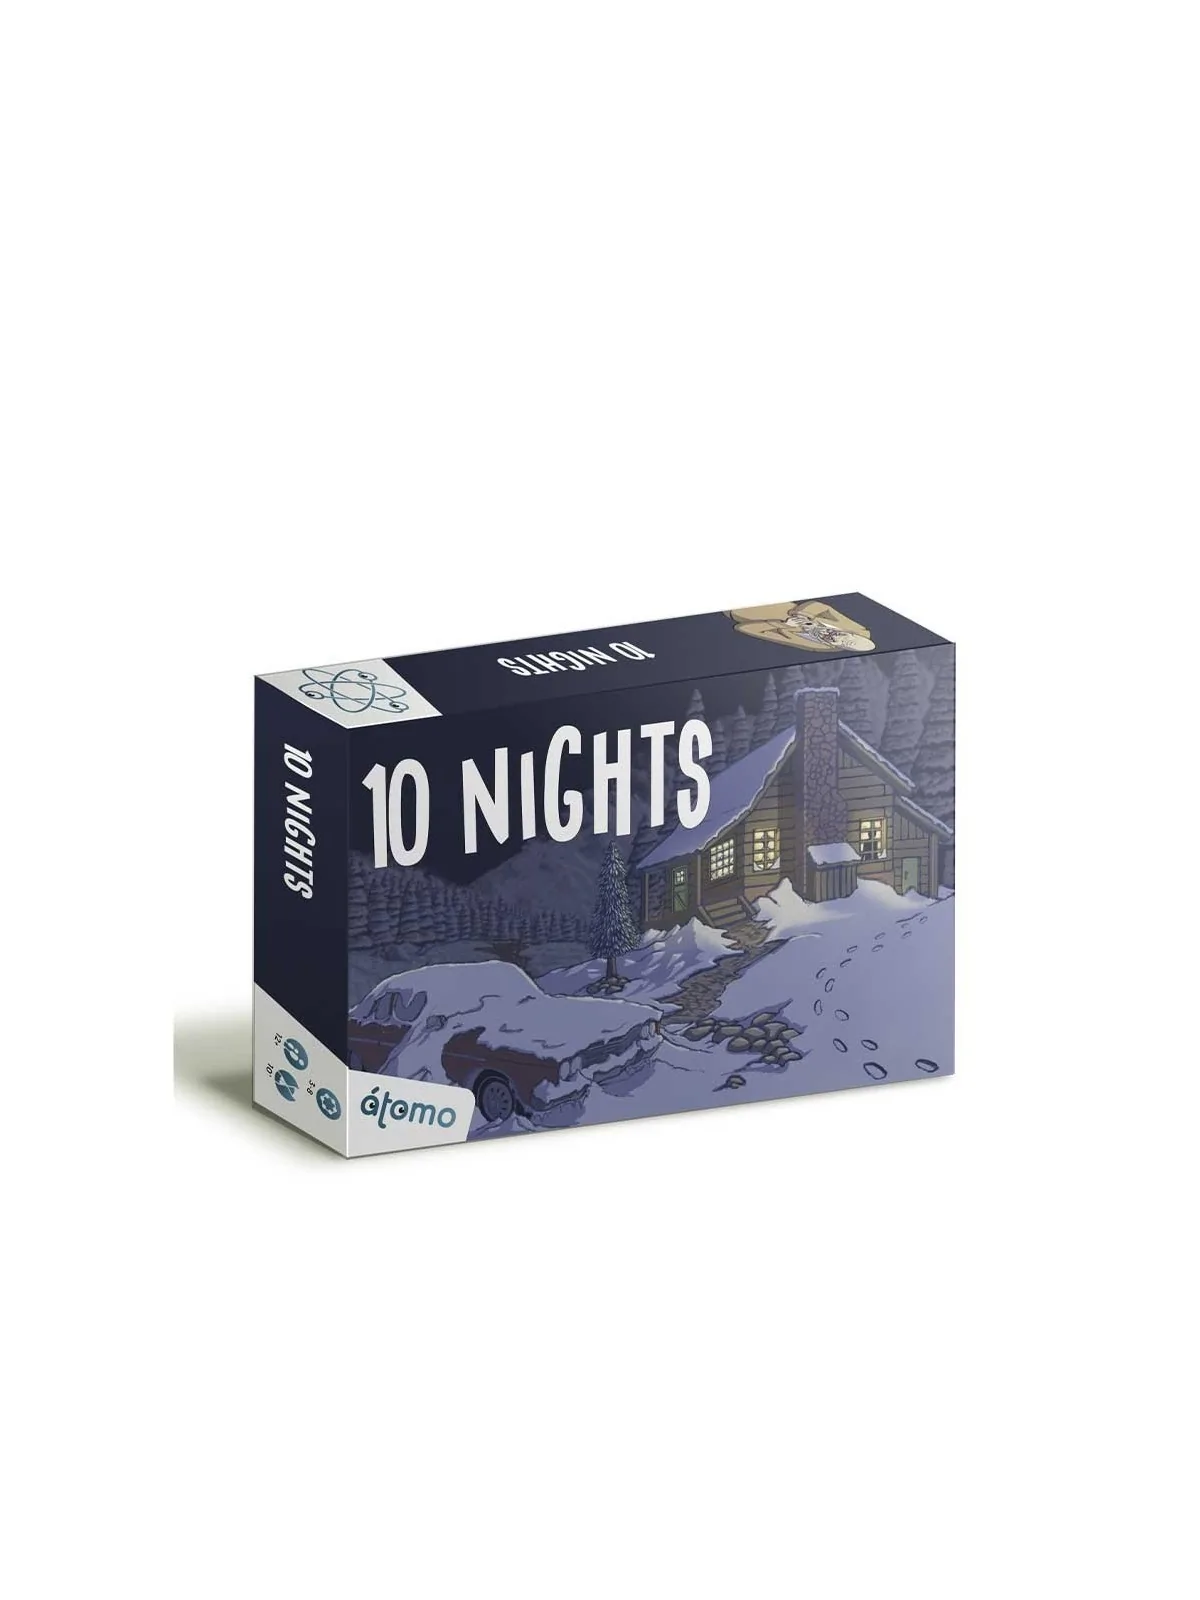 Comprar 10 Nights barato al mejor precio 19,95 € de Atomo Games